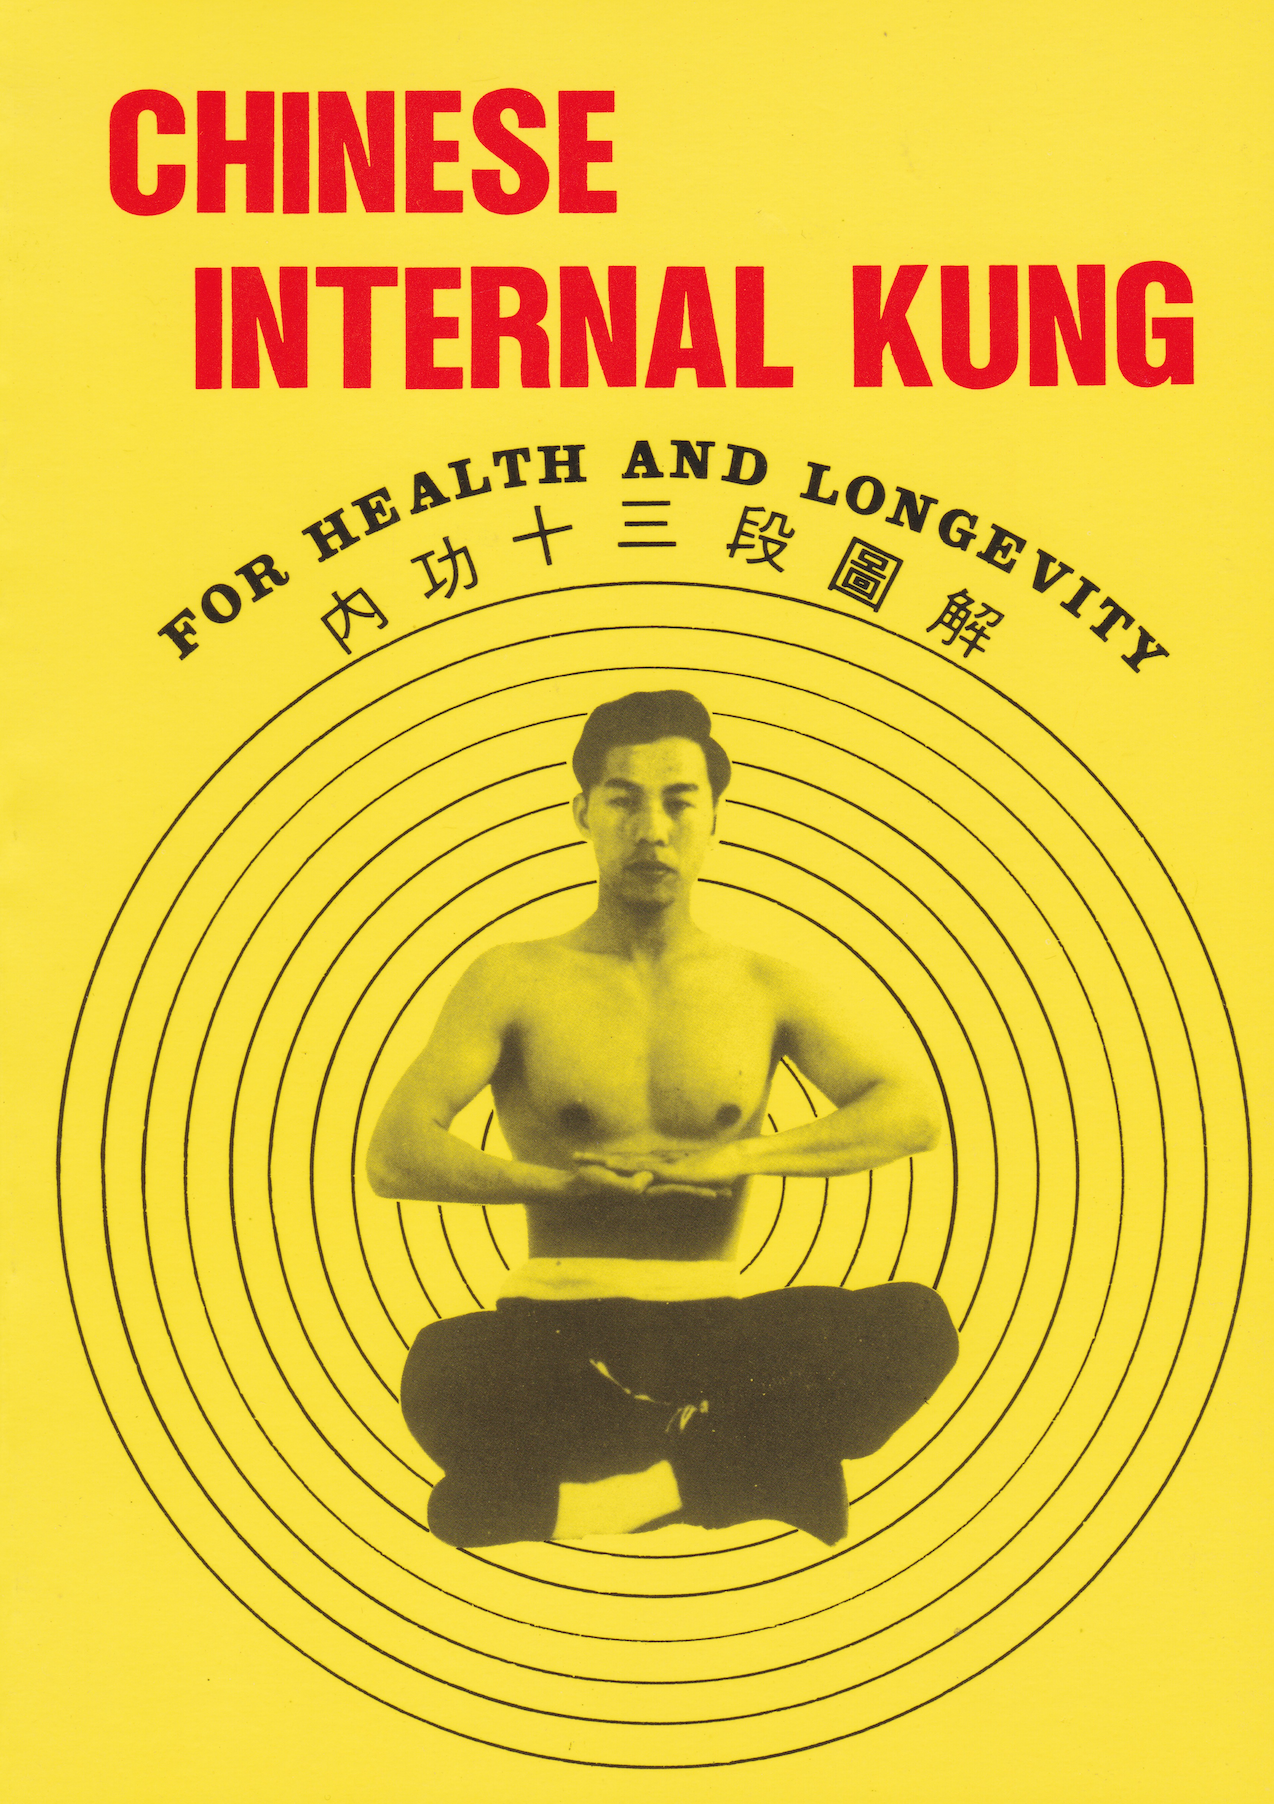 Libro de Kung interno chino para la salud y la longevidad de Douglas Hsieh